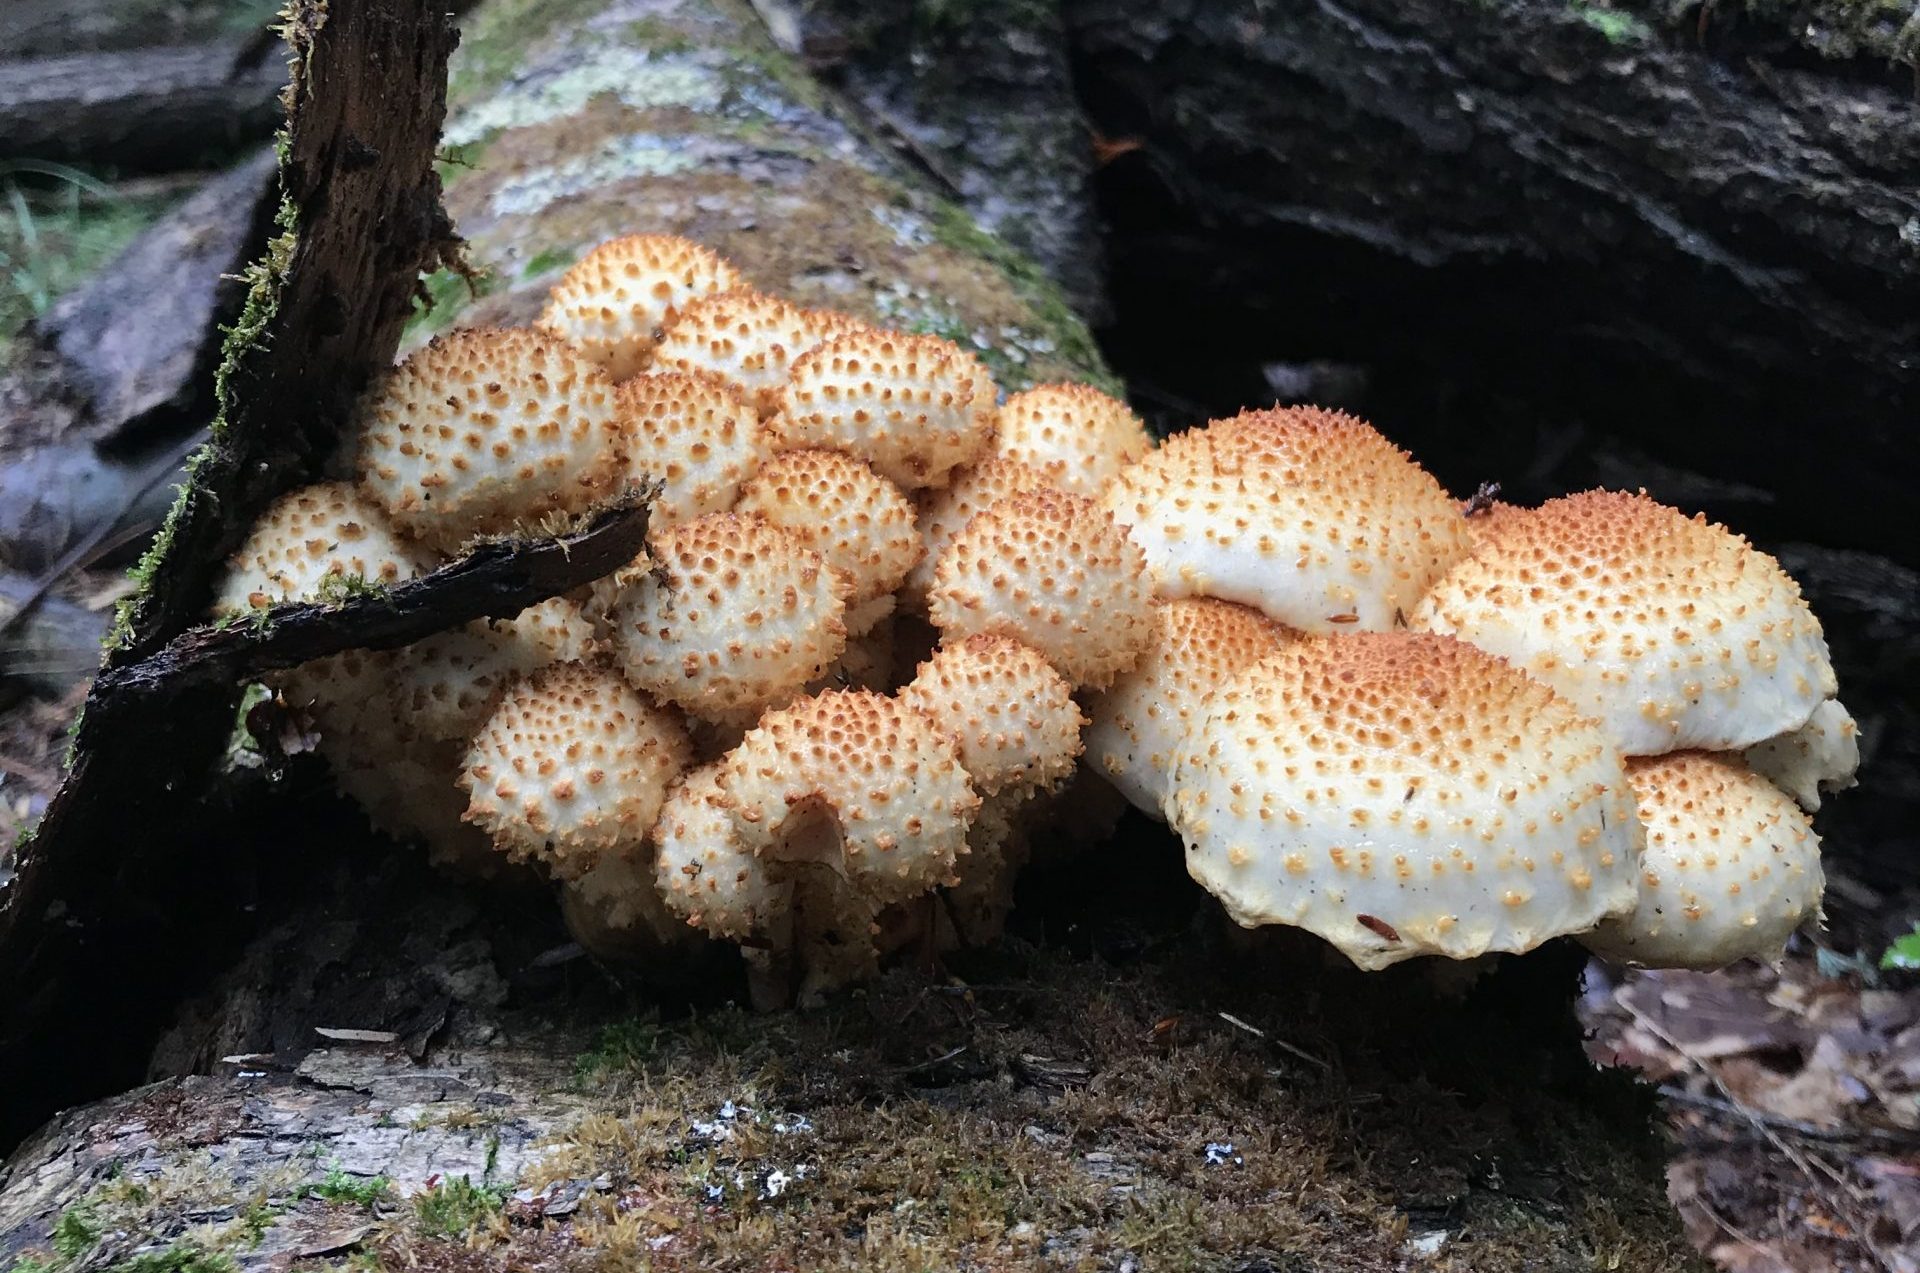 Pholiota mushrooms observed on Illinois Mycological Association survey.